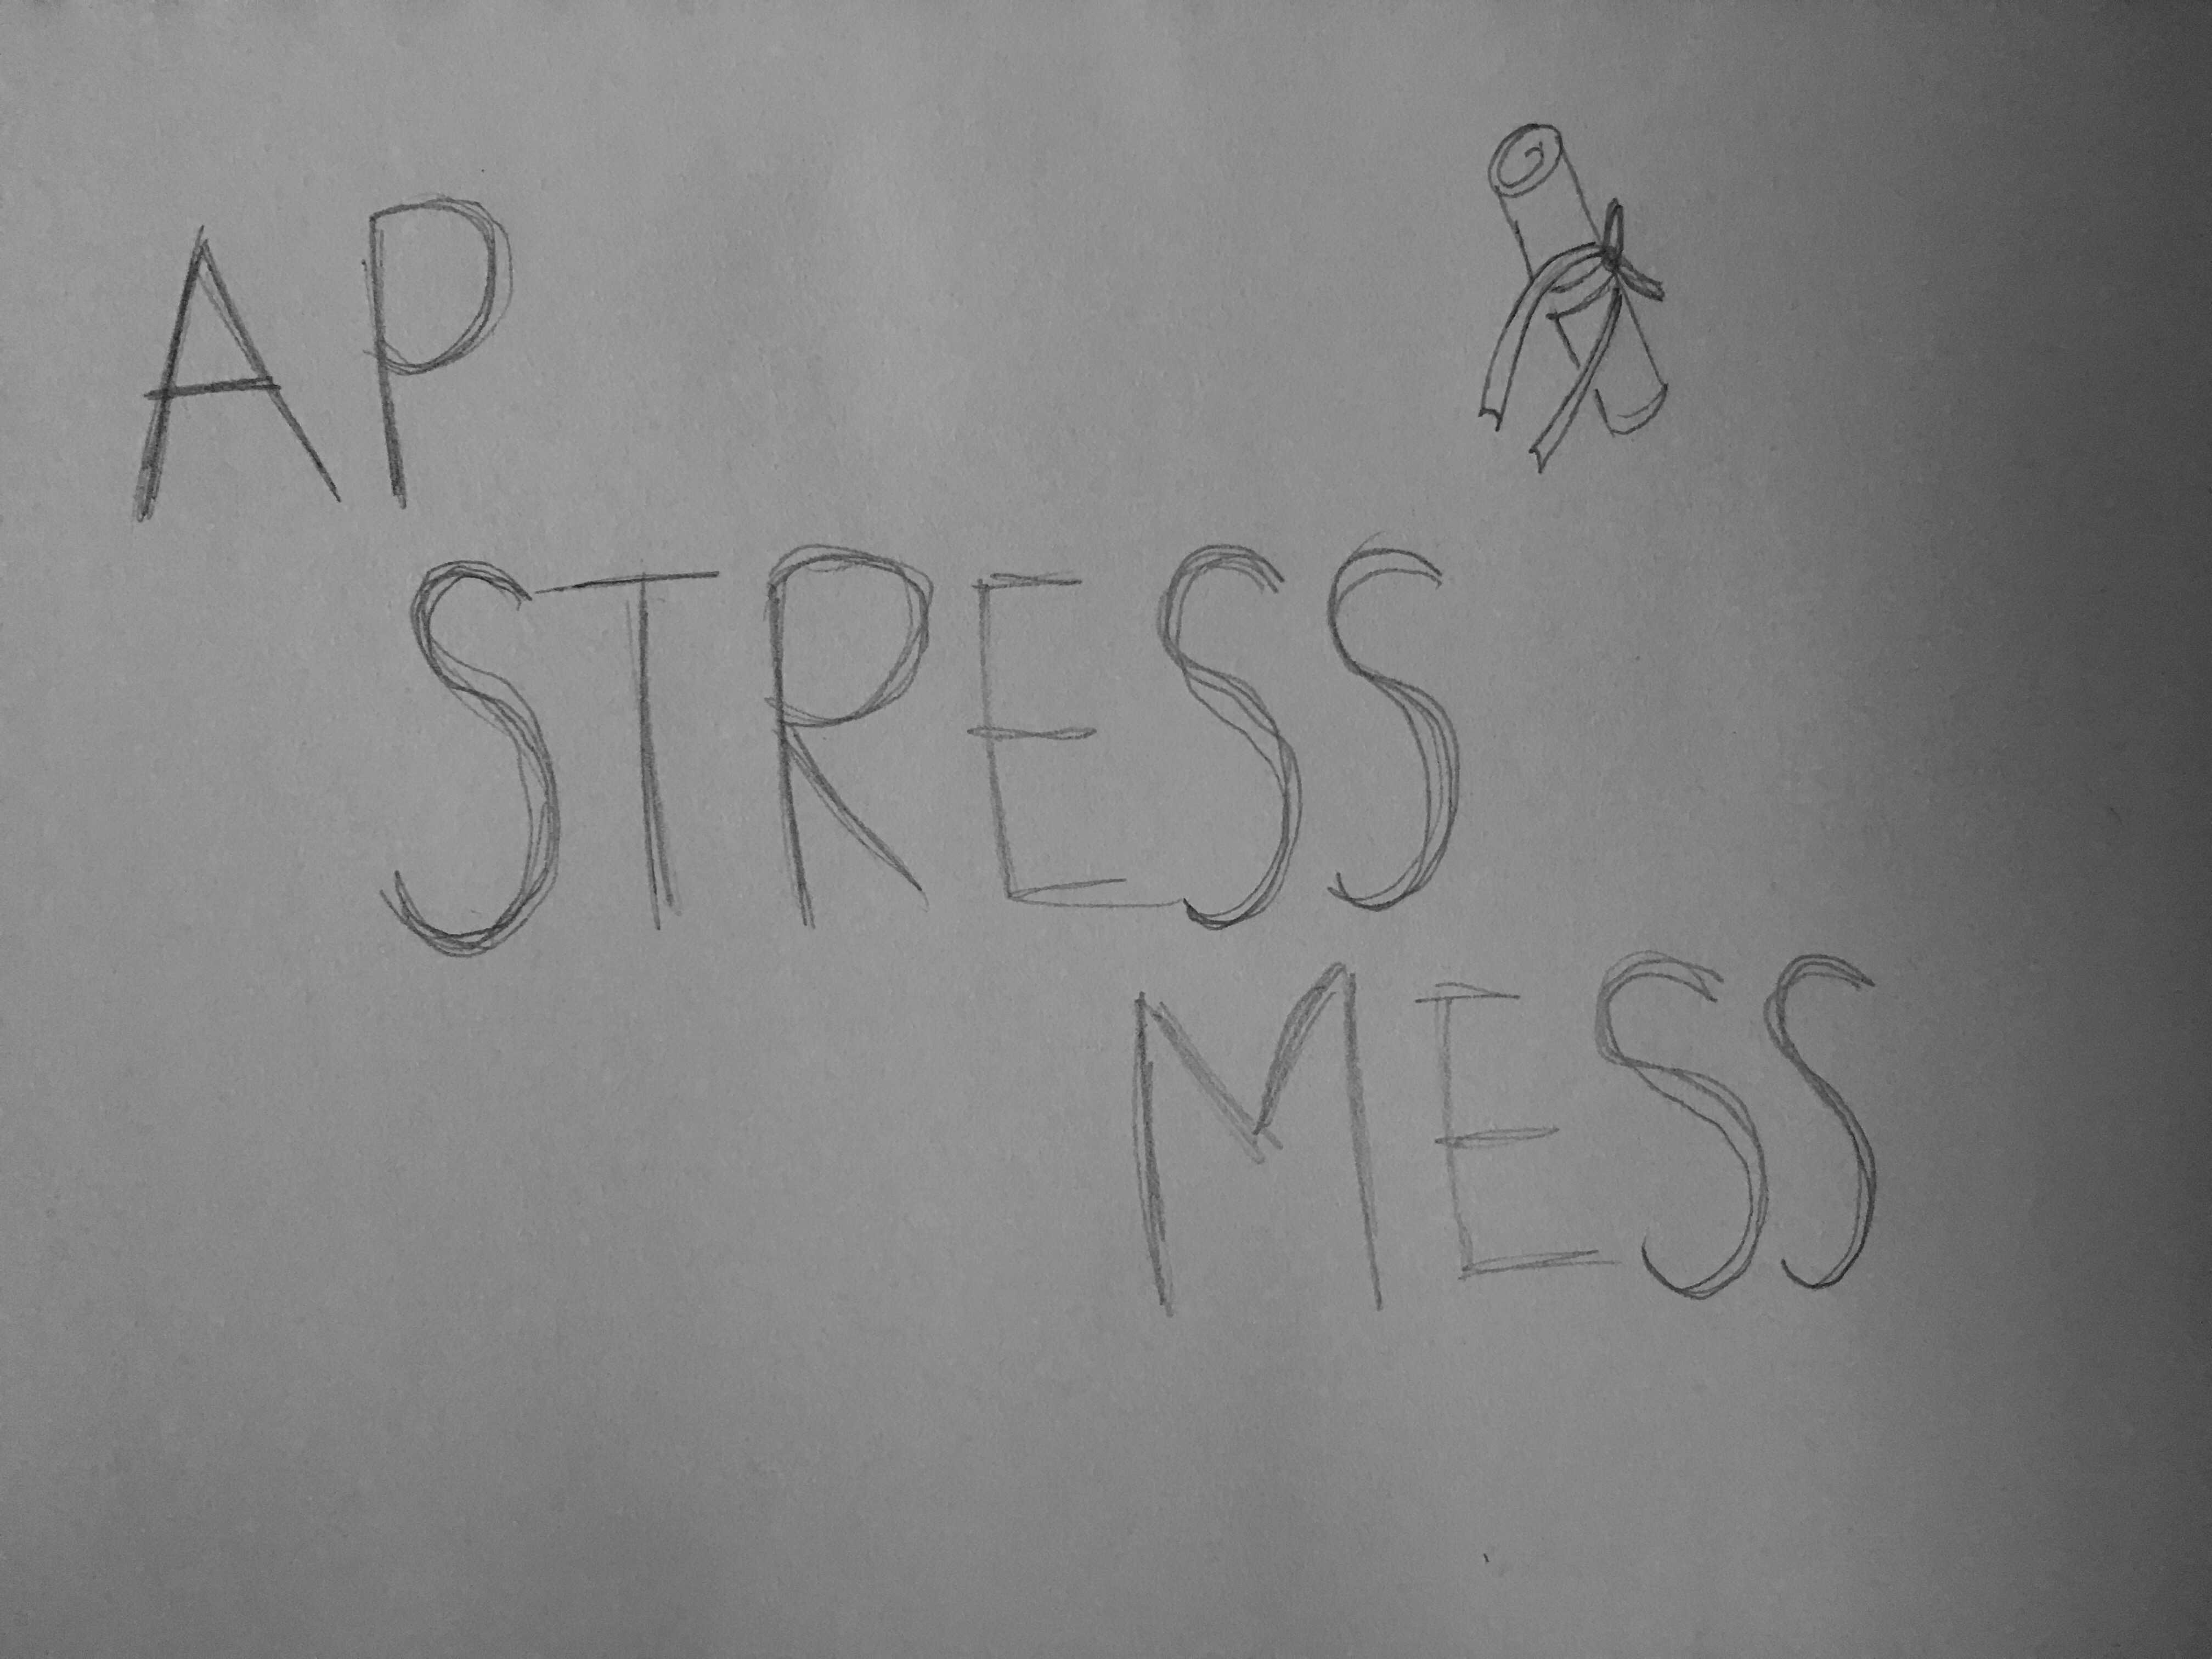 The AP Stress Mess